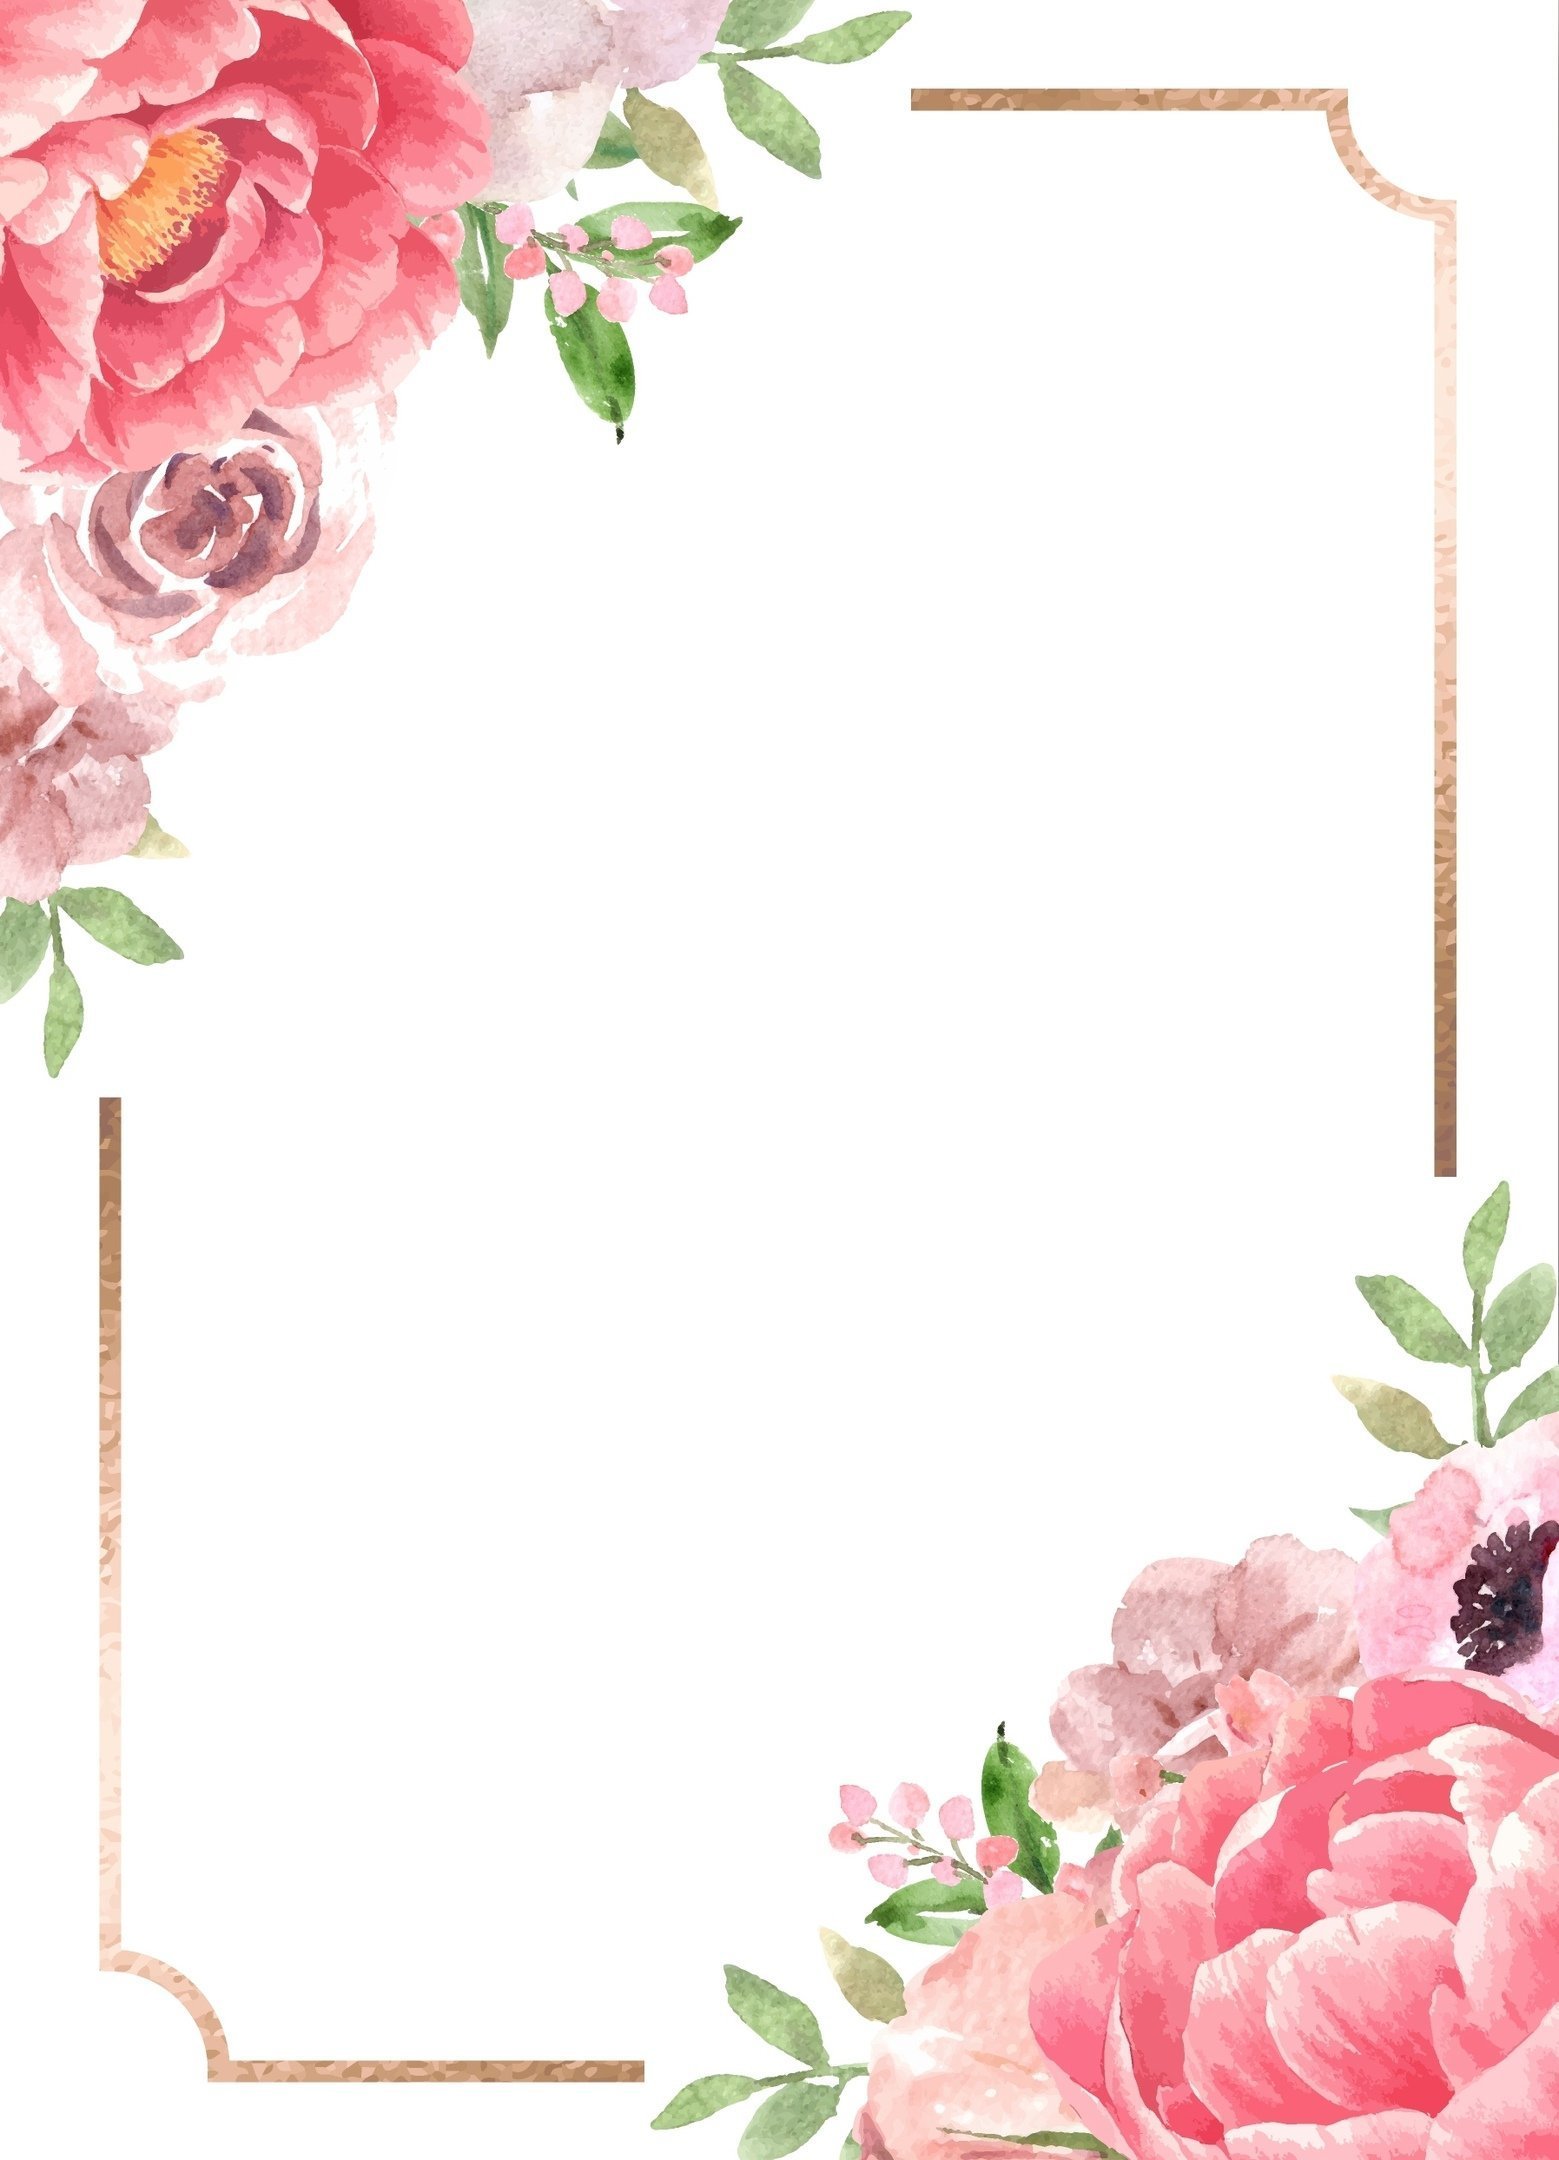 Вертикальная рамка фон с цветами роз | Премиум векторы